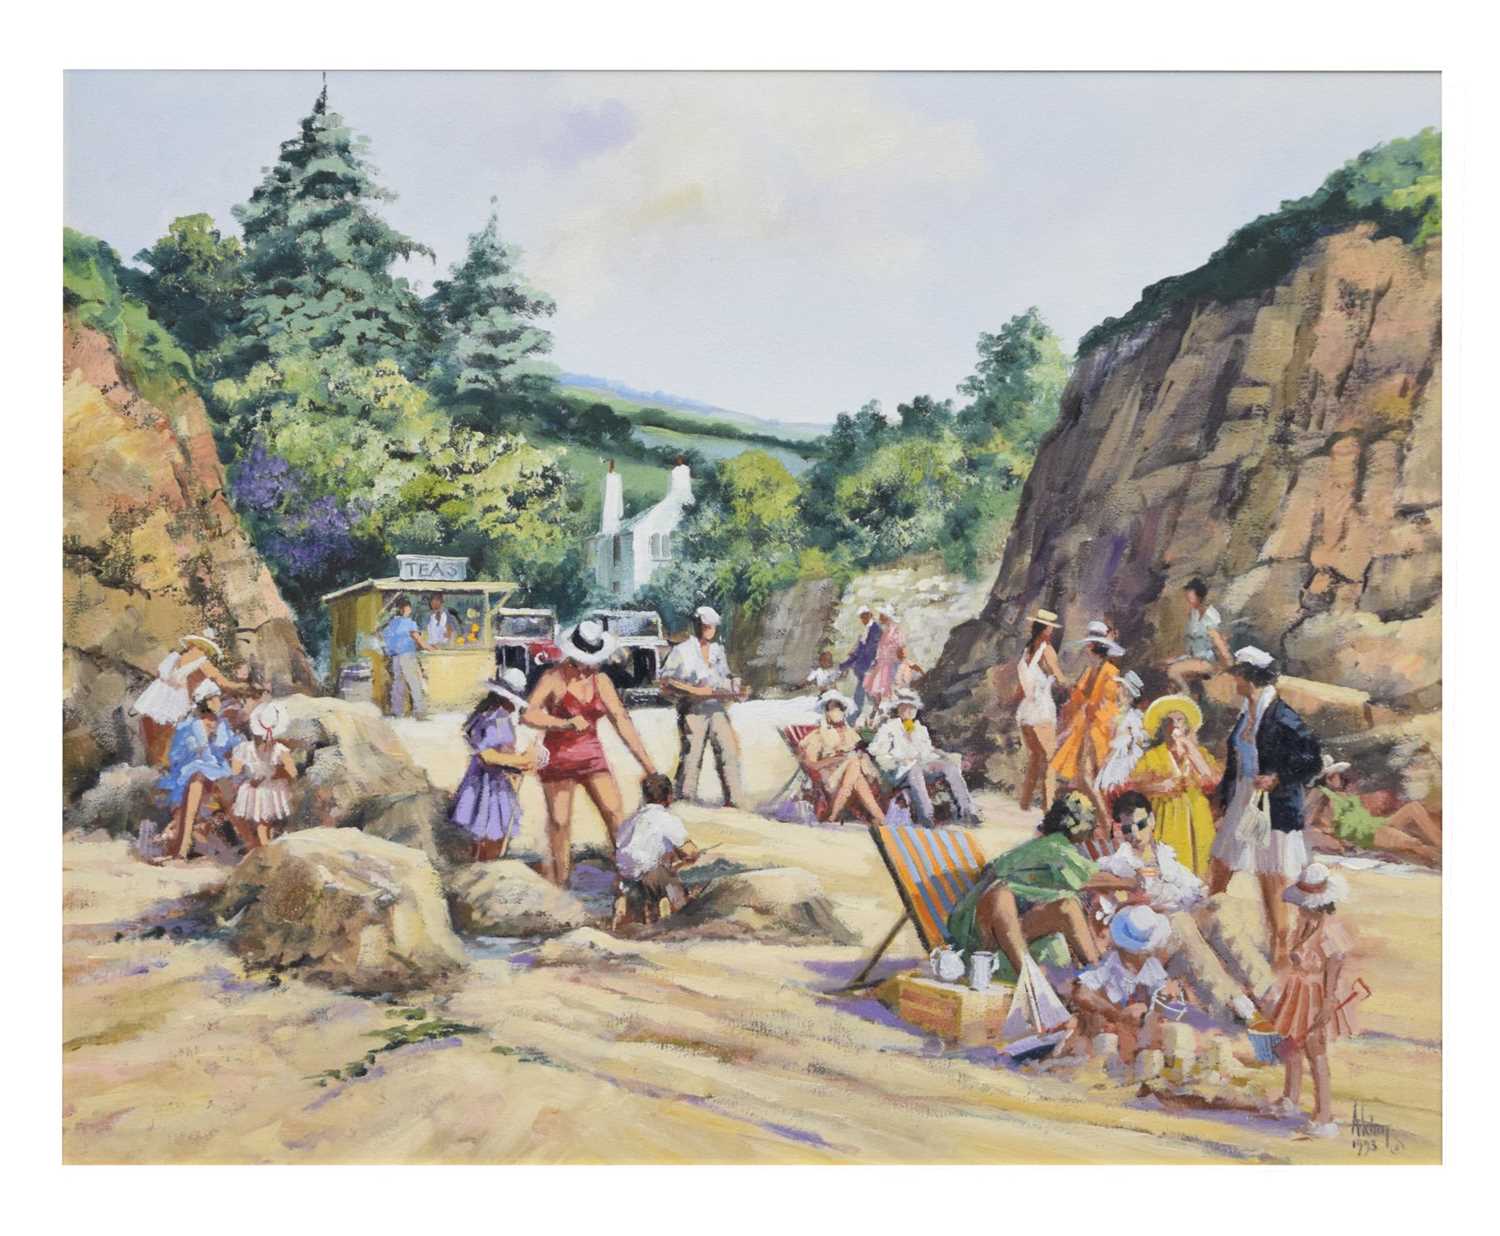 Alan King (1946-2013) - Oil on canvas - 'Tea on the beach'